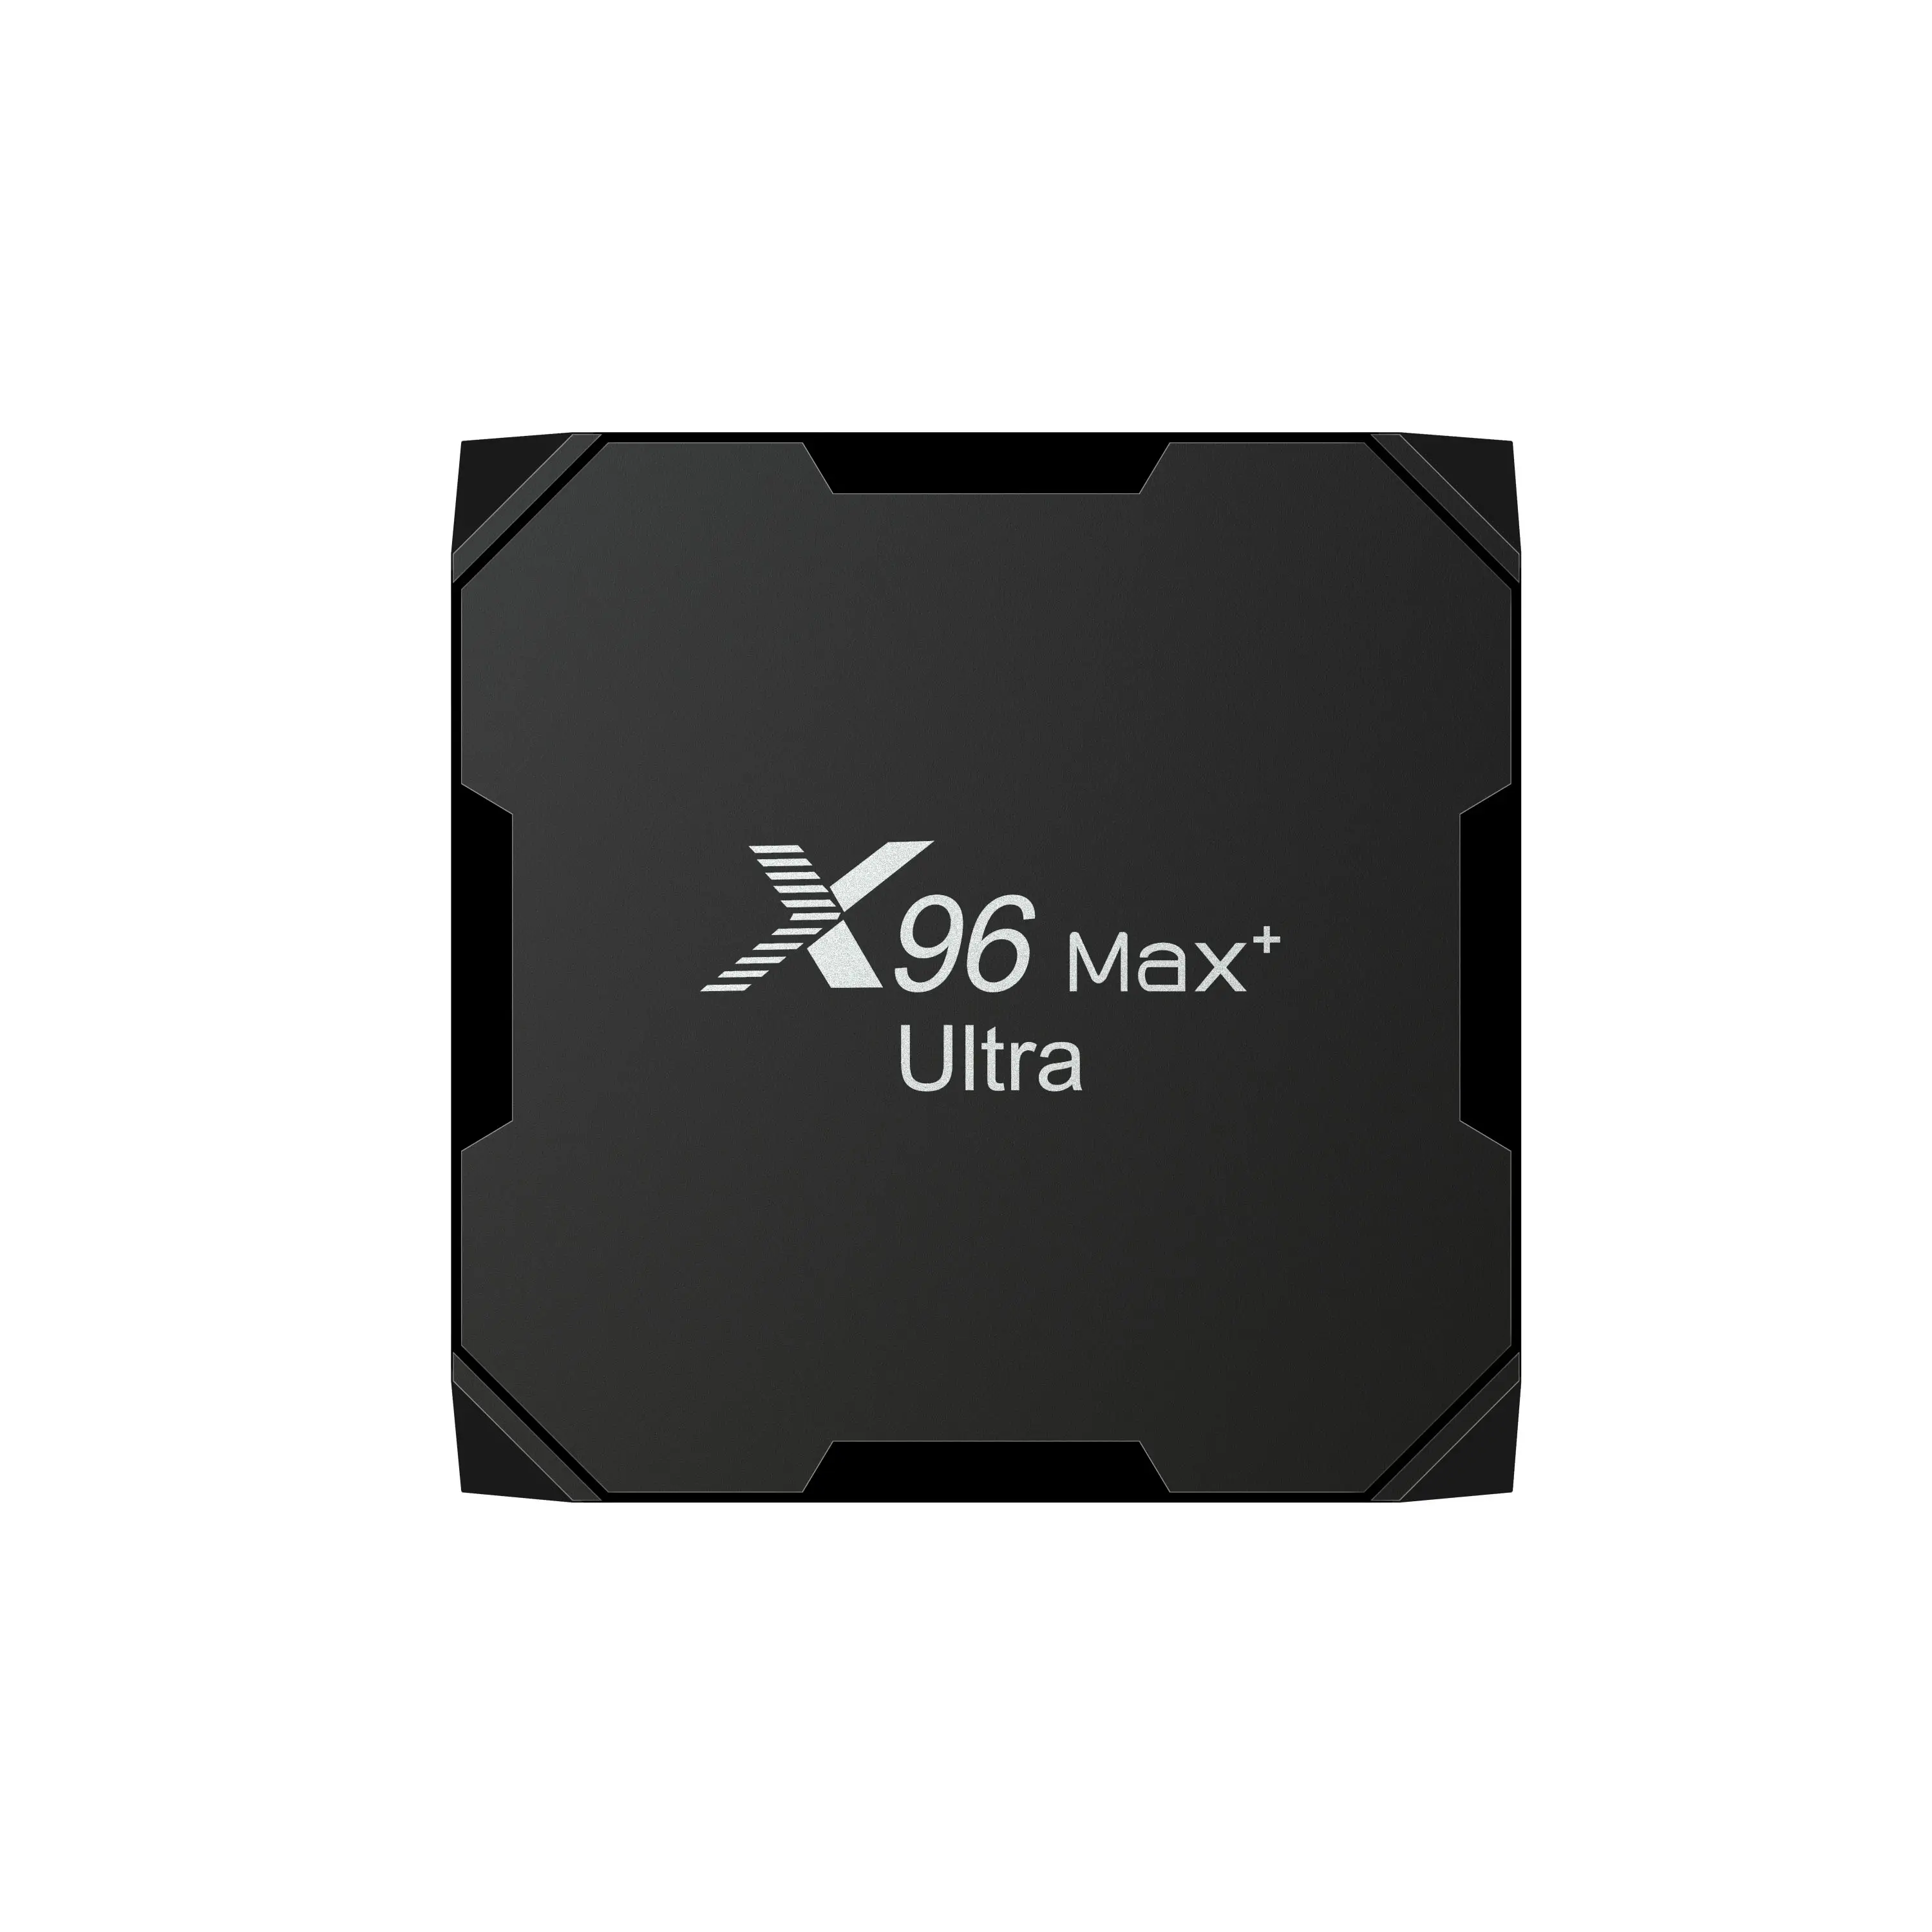 Nouveau X96 MAX Plus Android 11.0 TV BOX Amlogic S905X4 4GB 64GB 8K double Wifi 4K Youtube X96Max + décodeur de lecteur multimédia